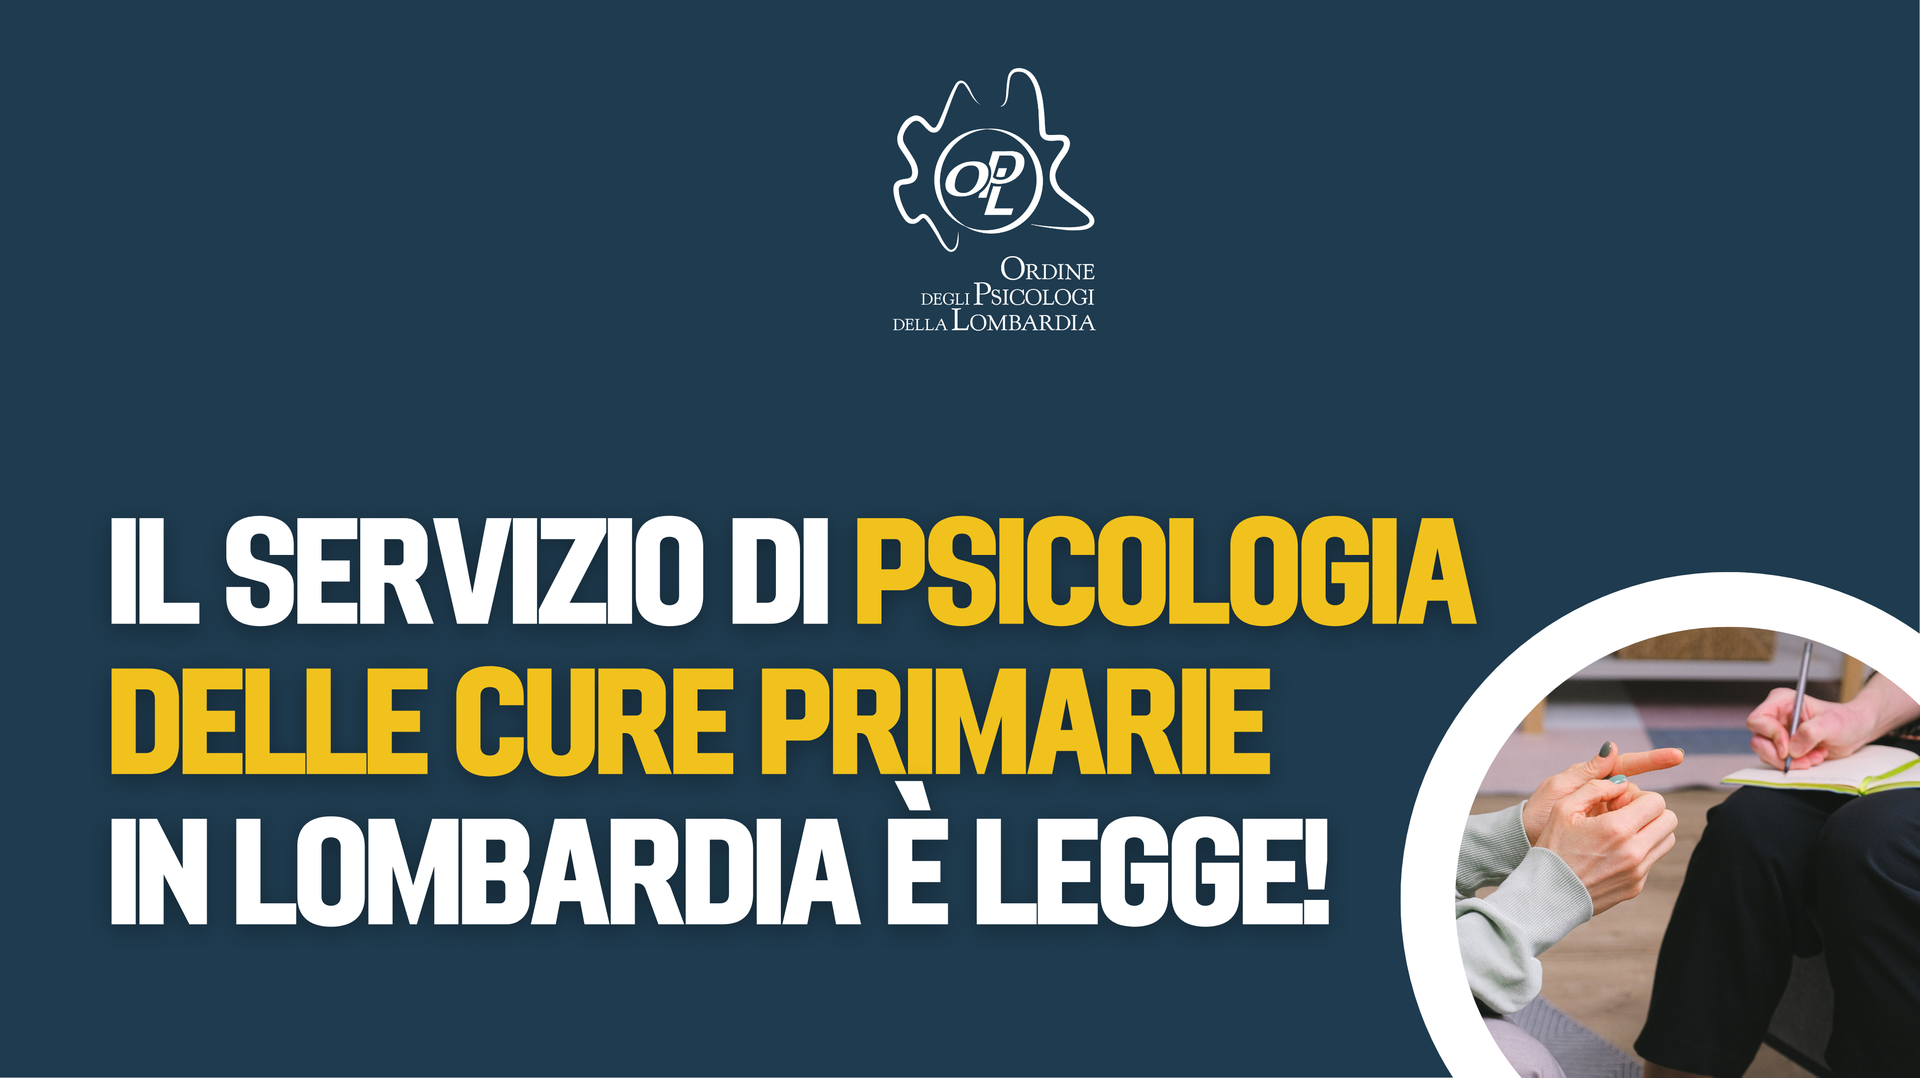 Approvato il servizio di psicologia delle cure primarie in Lombardia!